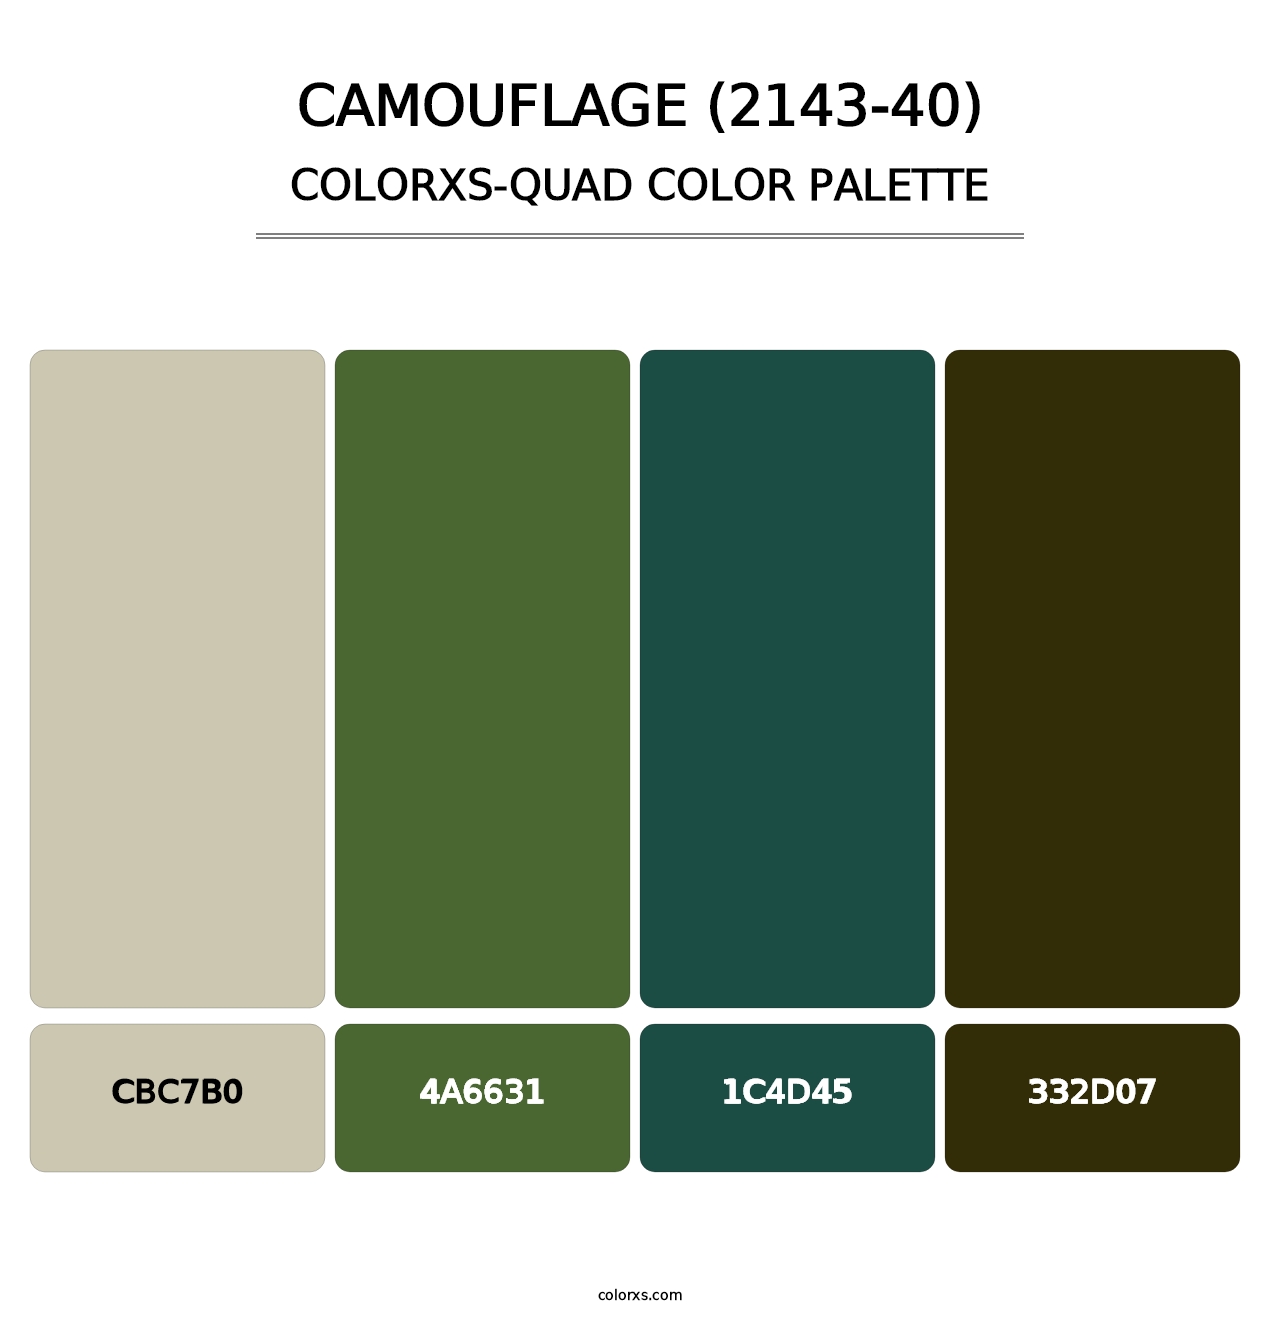 Camouflage (2143-40) - Colorxs Quad Palette